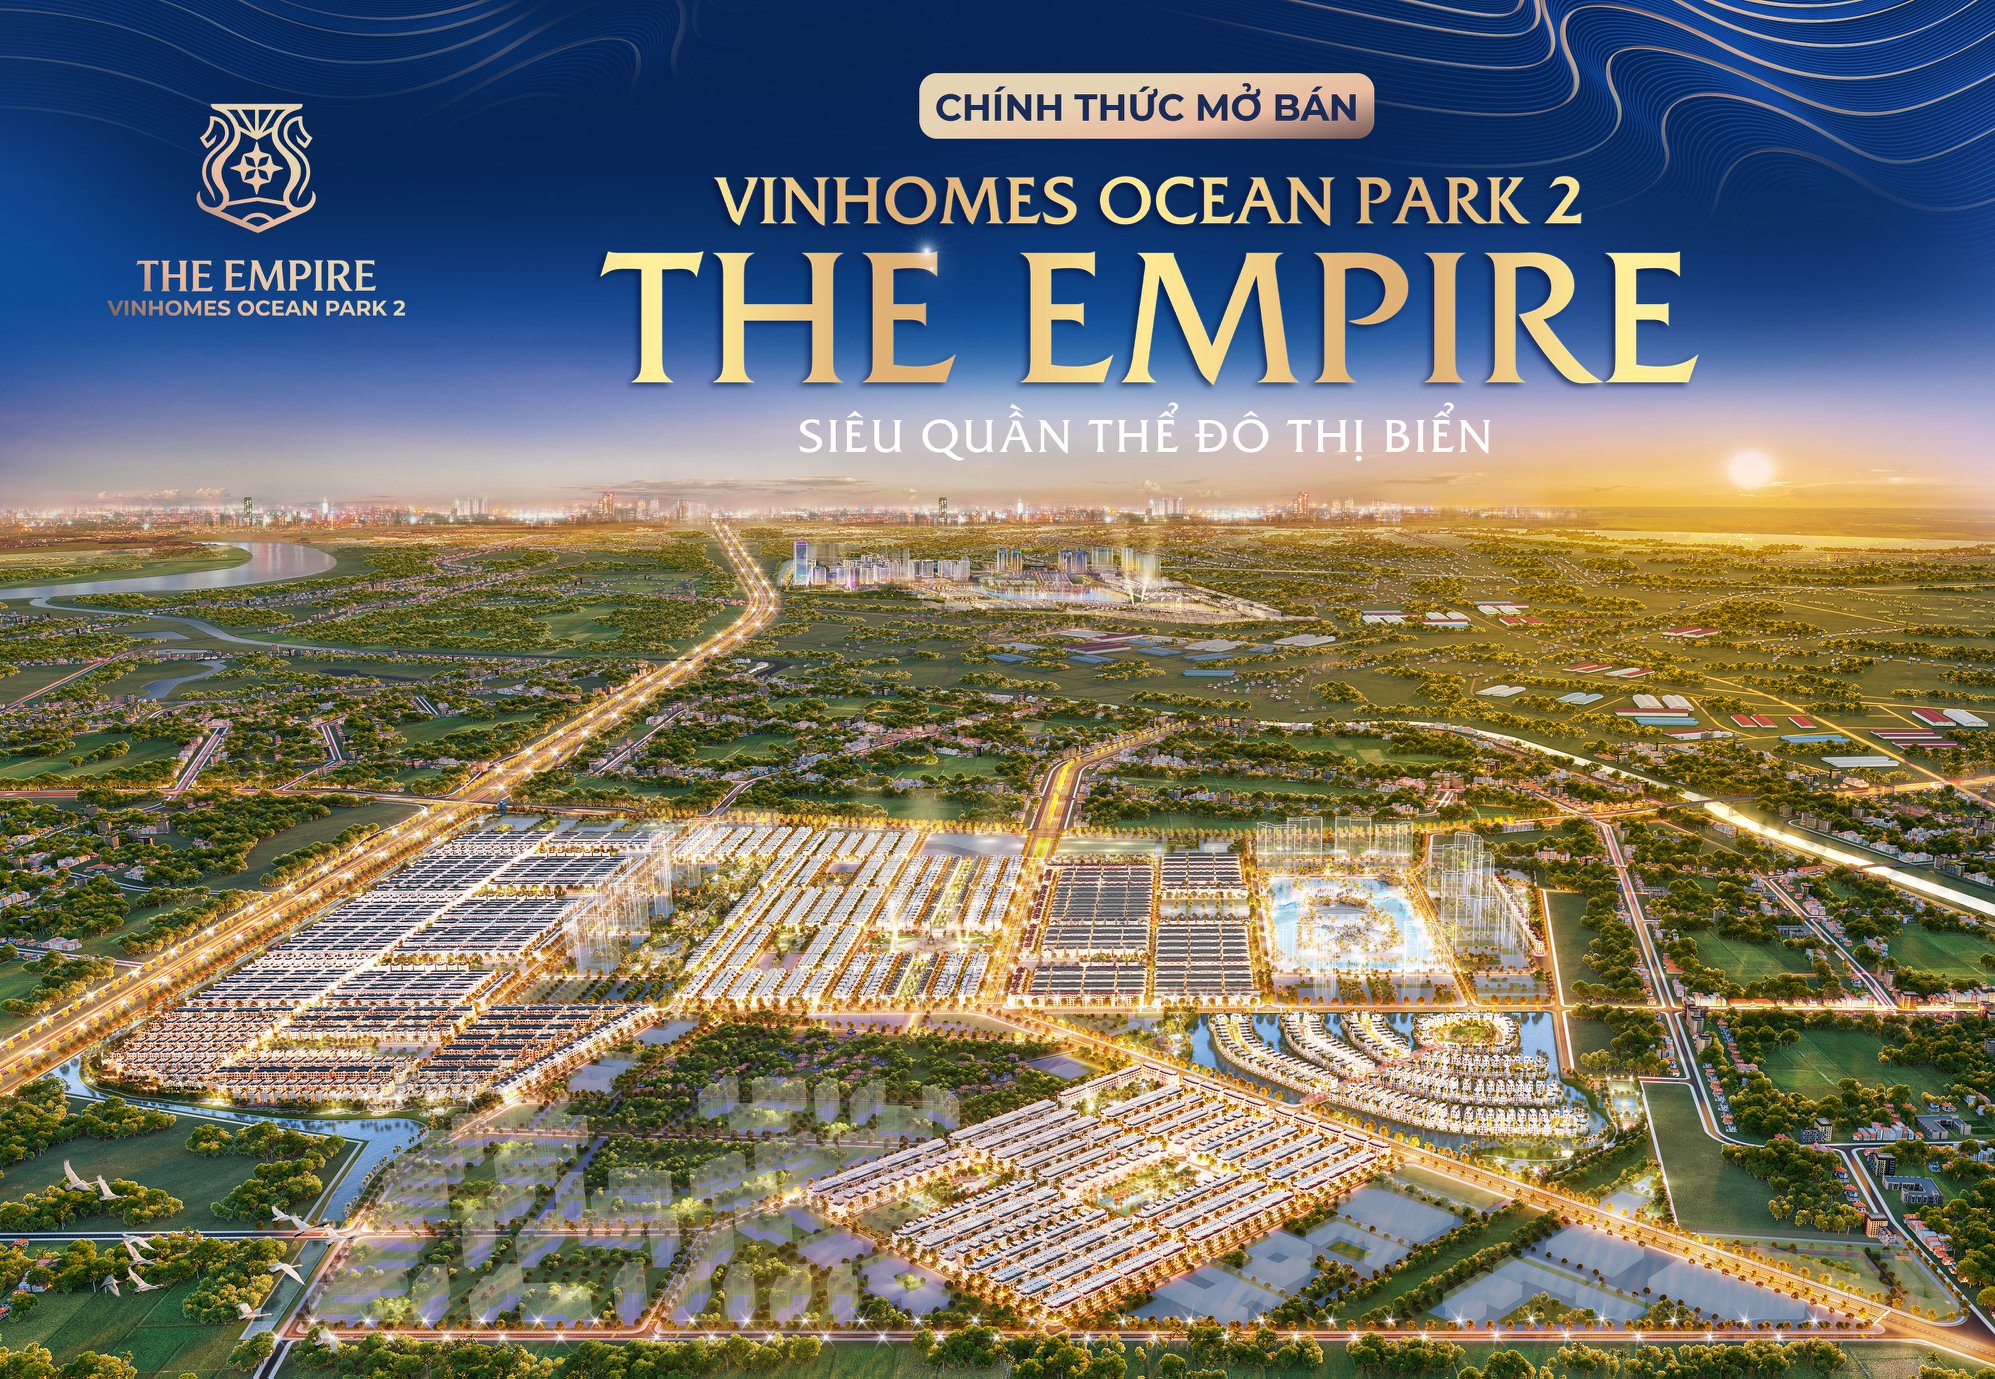 Vinhomes Ocean Park 2 - The Empire Hưng Yên